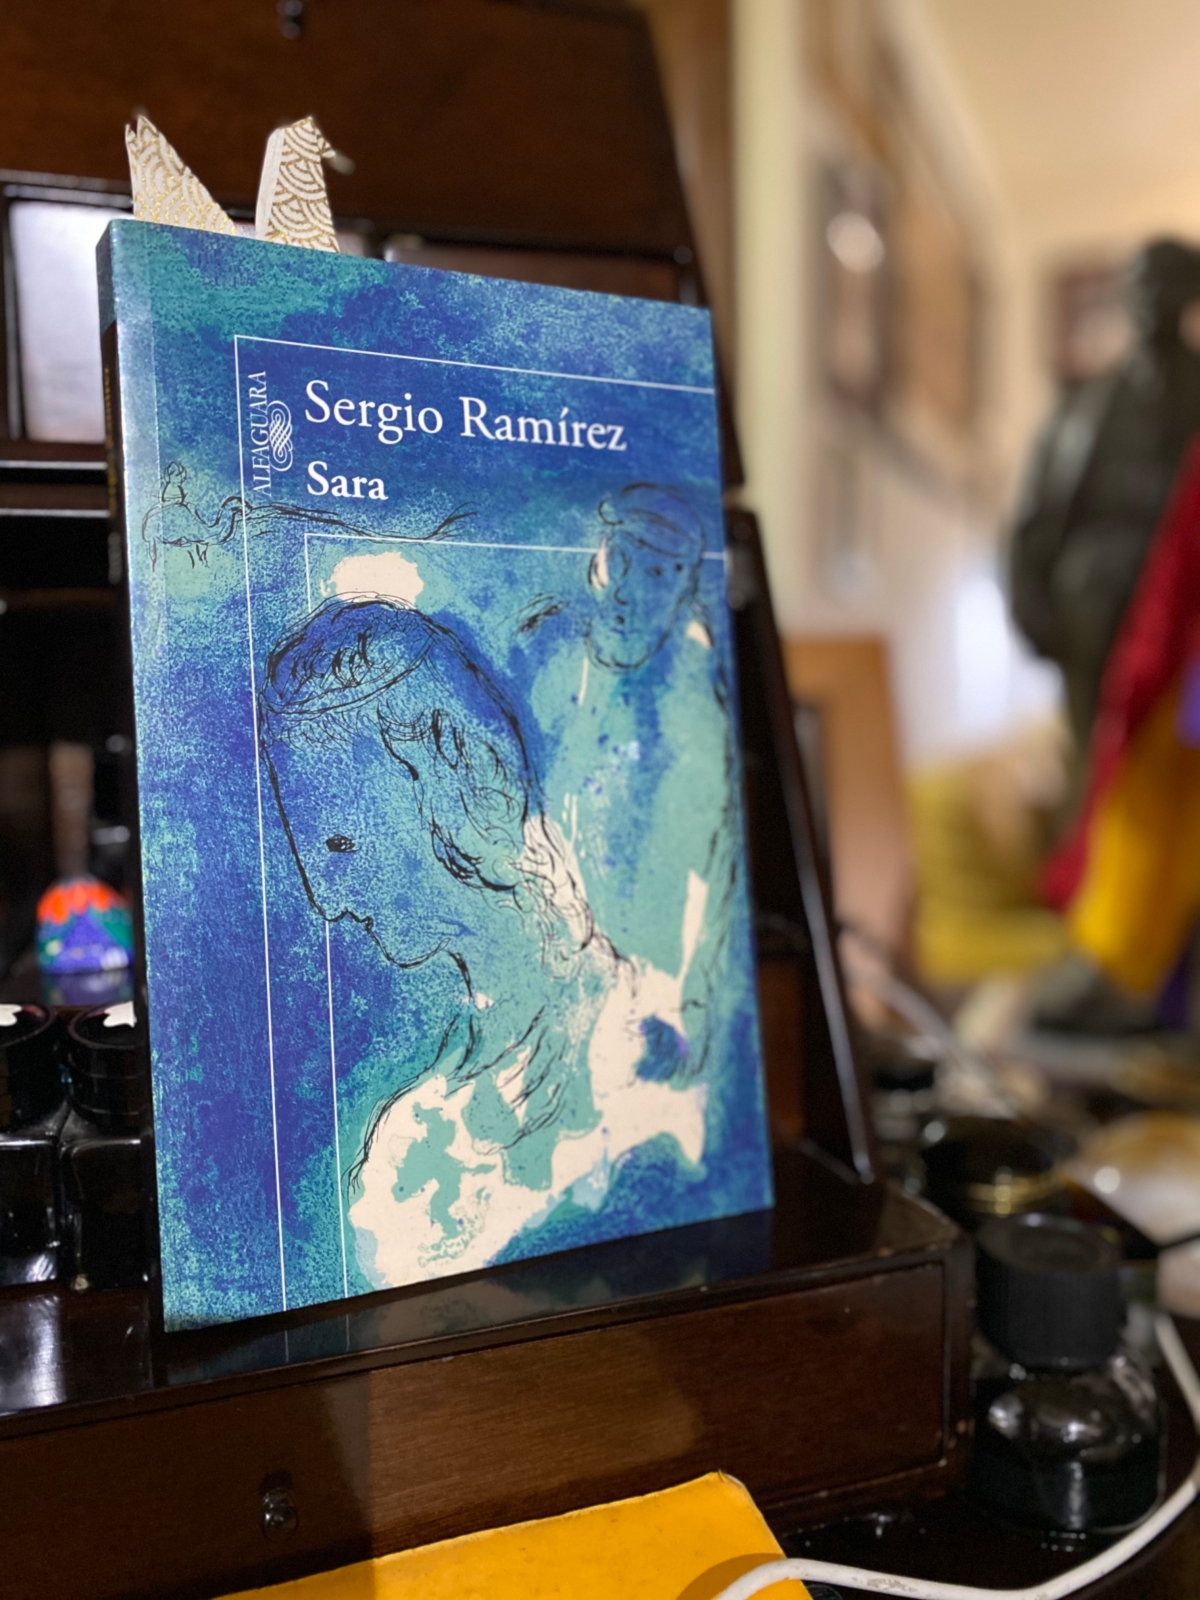 El libro nuestro de cada martes: Sara de Sergio Ramírez, ed. Alfaguara